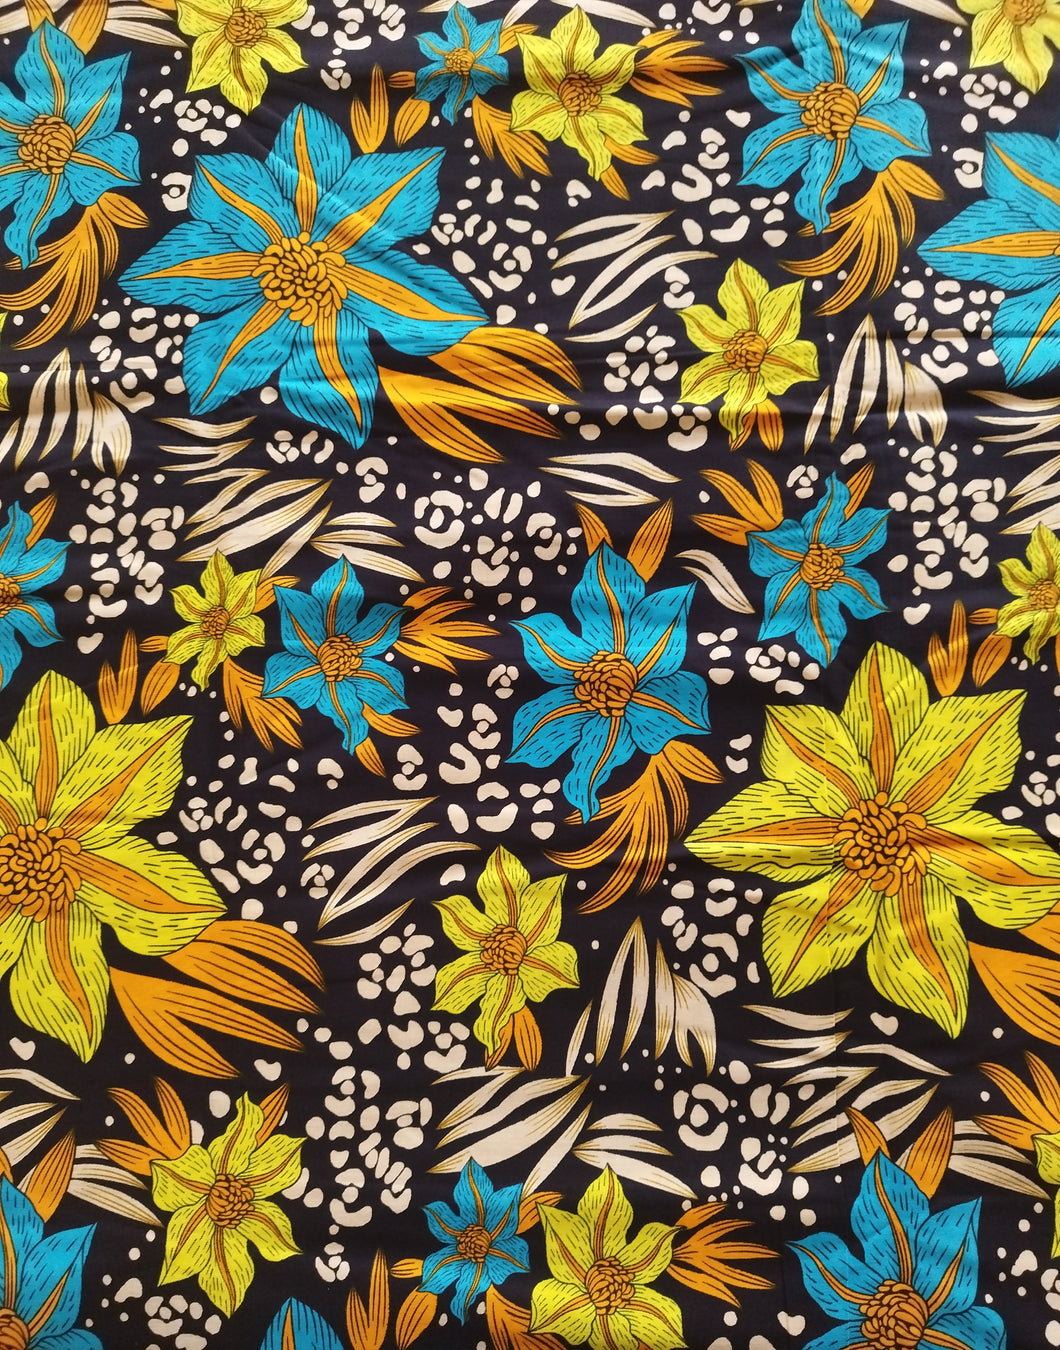 Tissu wax - fleurs jaunes, bleues, oranges - par 50 centimètres